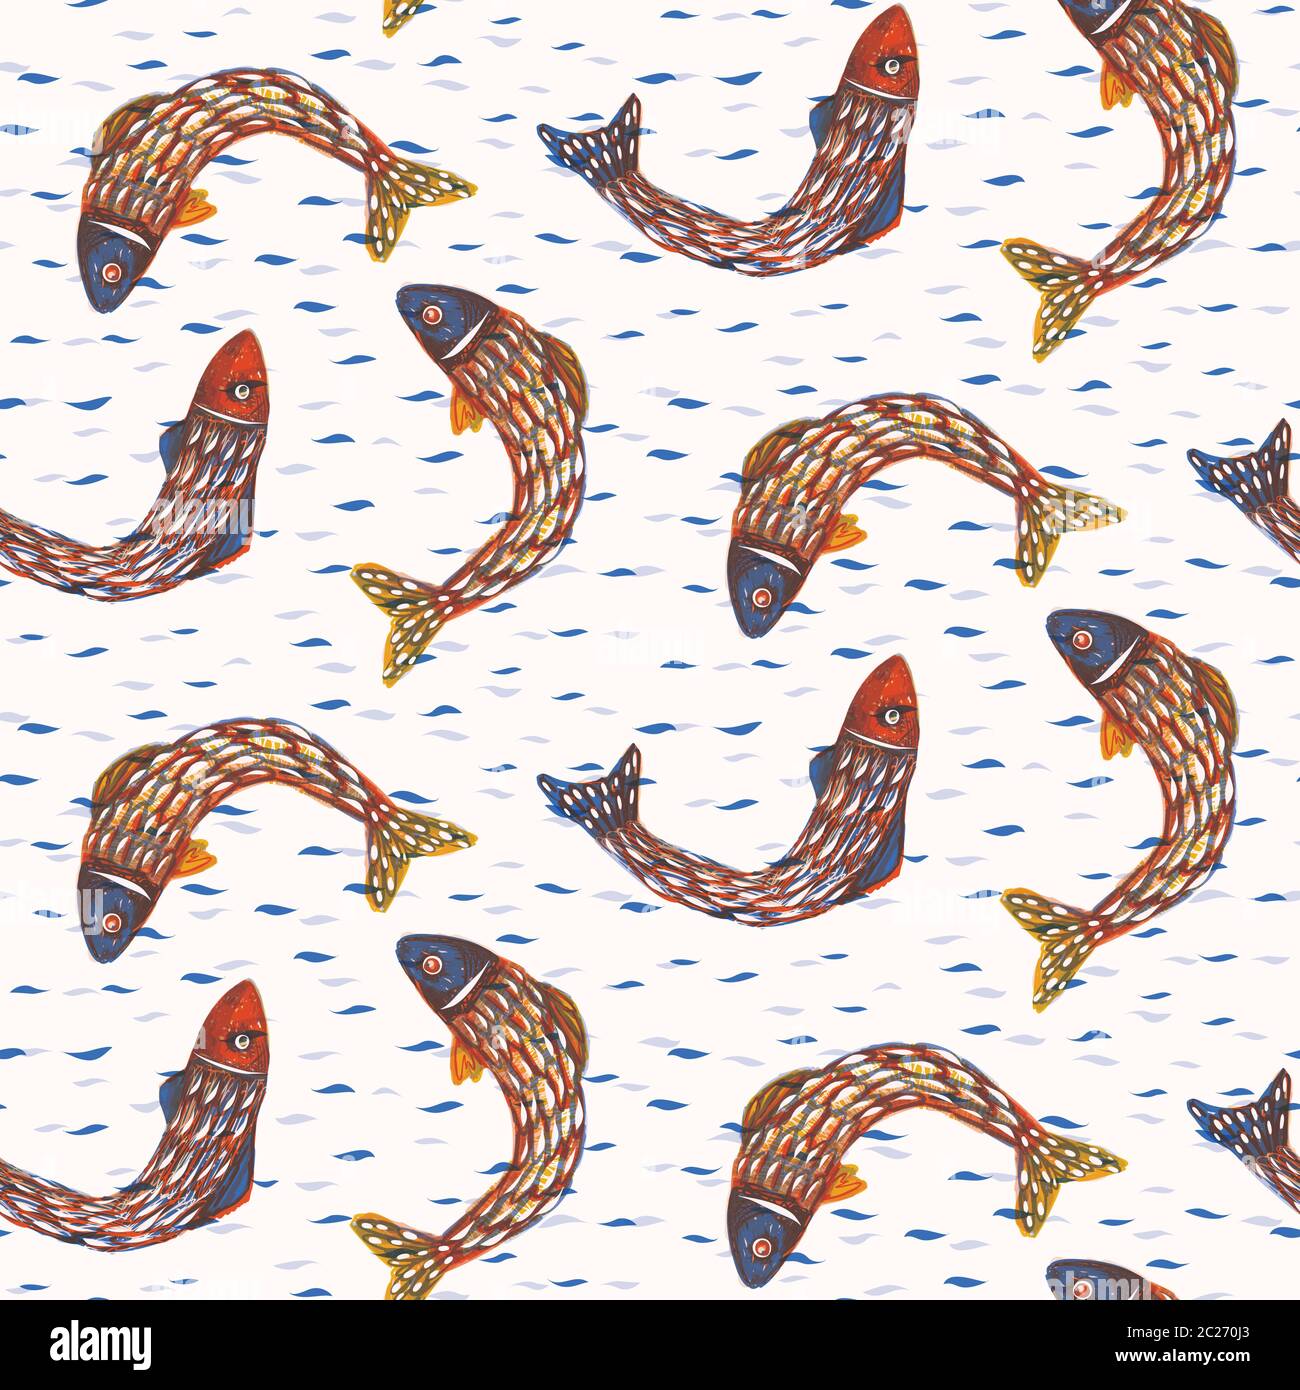 Sardine Shoal of Fish modello vettoriale senza giunture. Motivo del mare di nuoto dipinto per il Festival alimentare portoghese di Sant'Antonio di Lisbona. Immagine per tradizionale Illustrazione Vettoriale